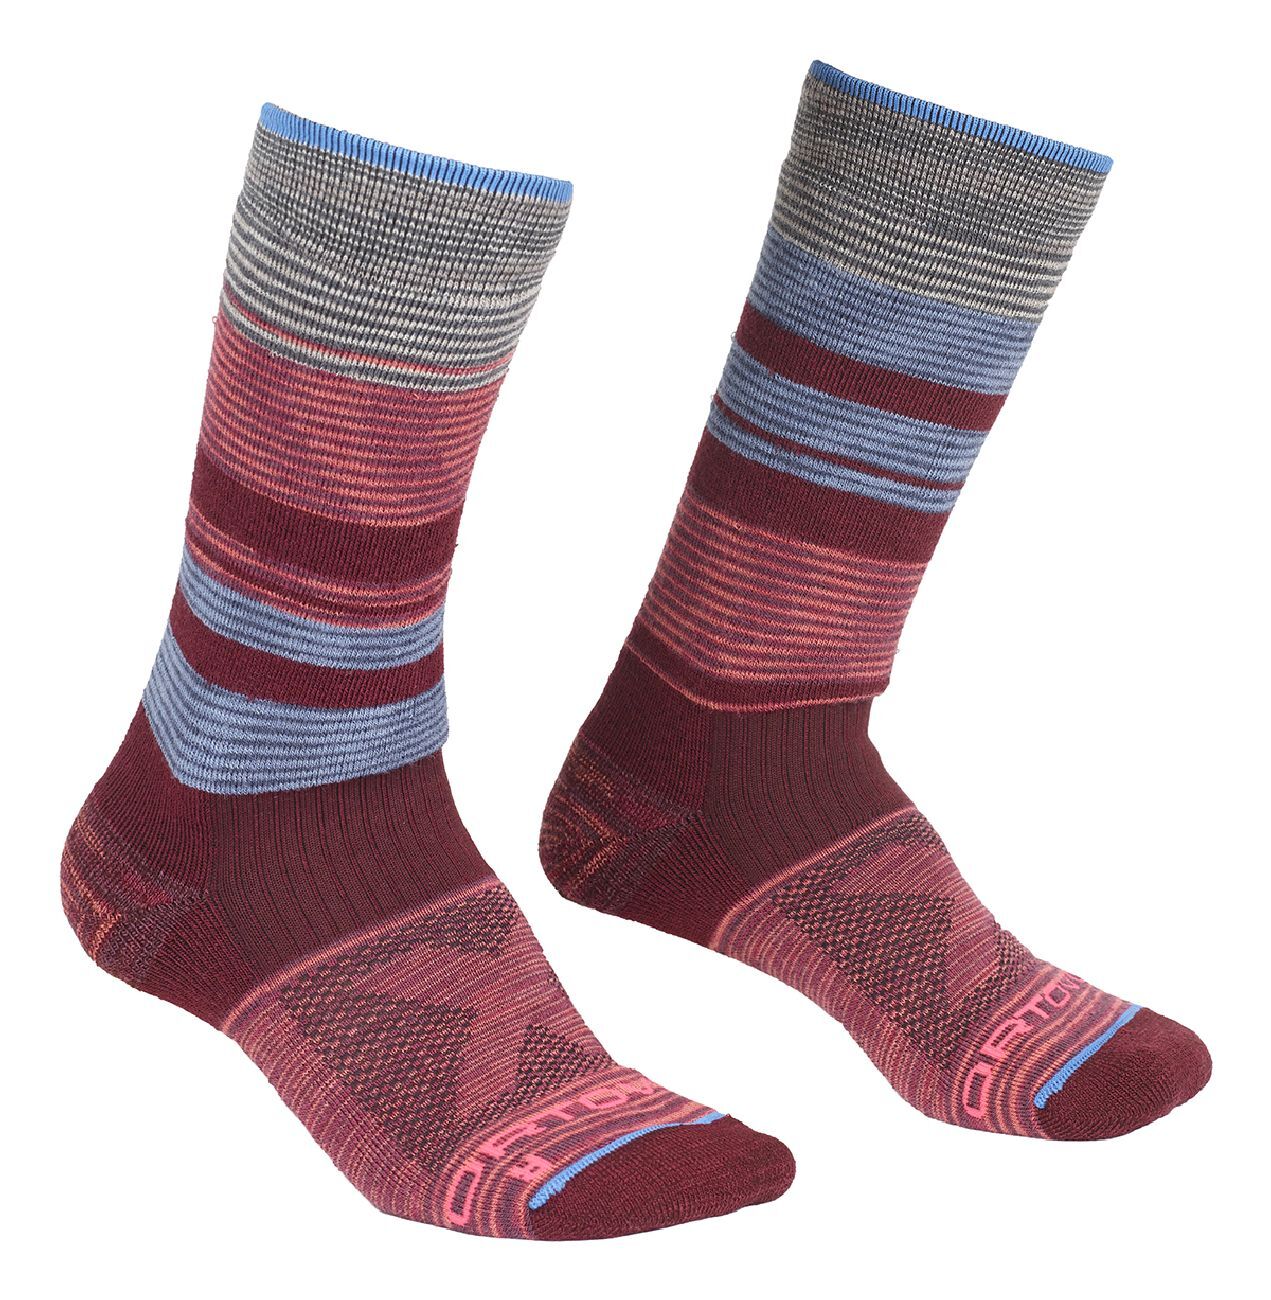 Ortovox All Mountain Mid Socks Warm - Hiking socks - Women's